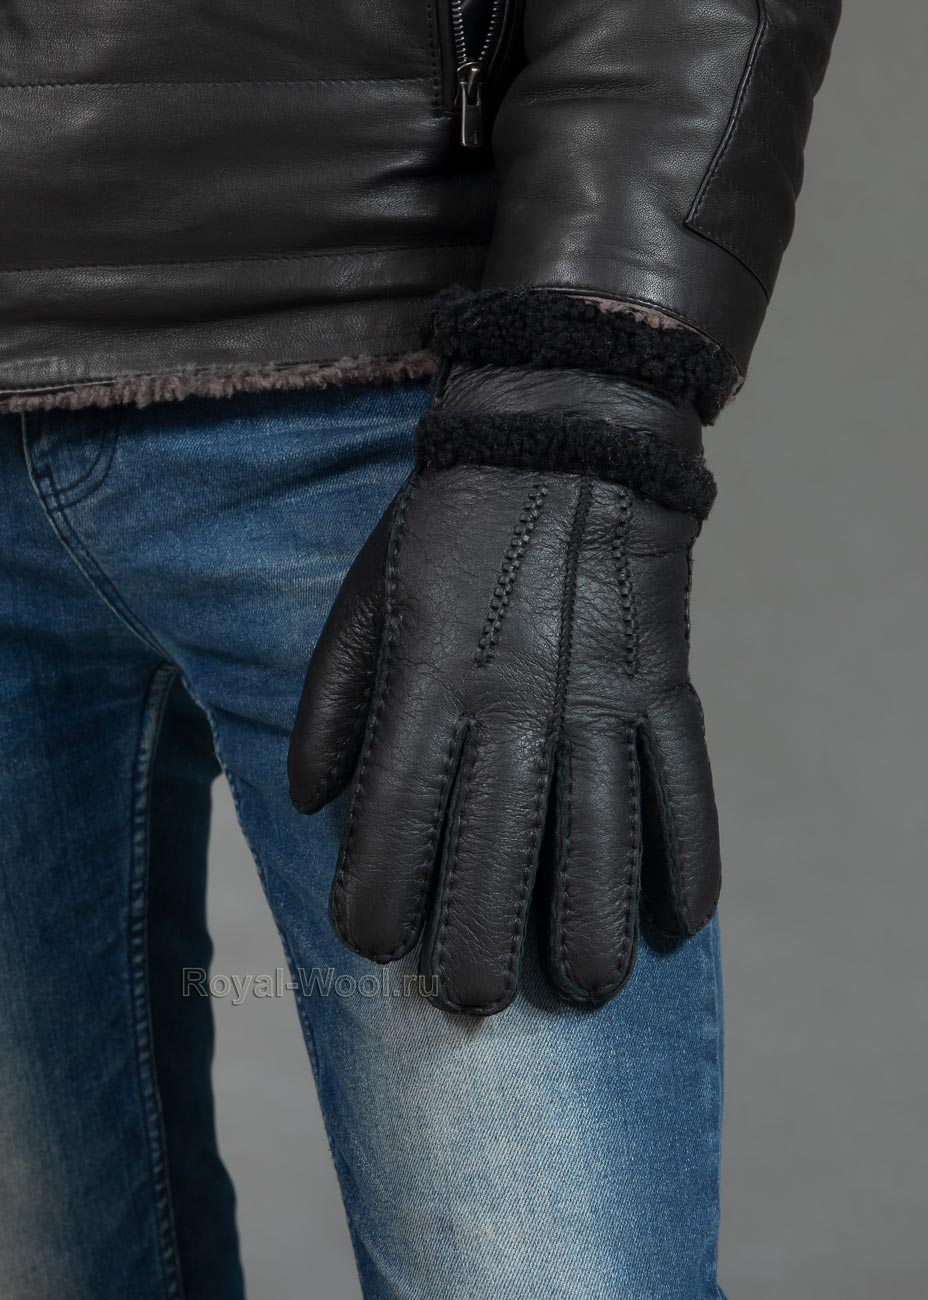 Кожаные мужские перчатки с натуральным мехом | Купить , СПб